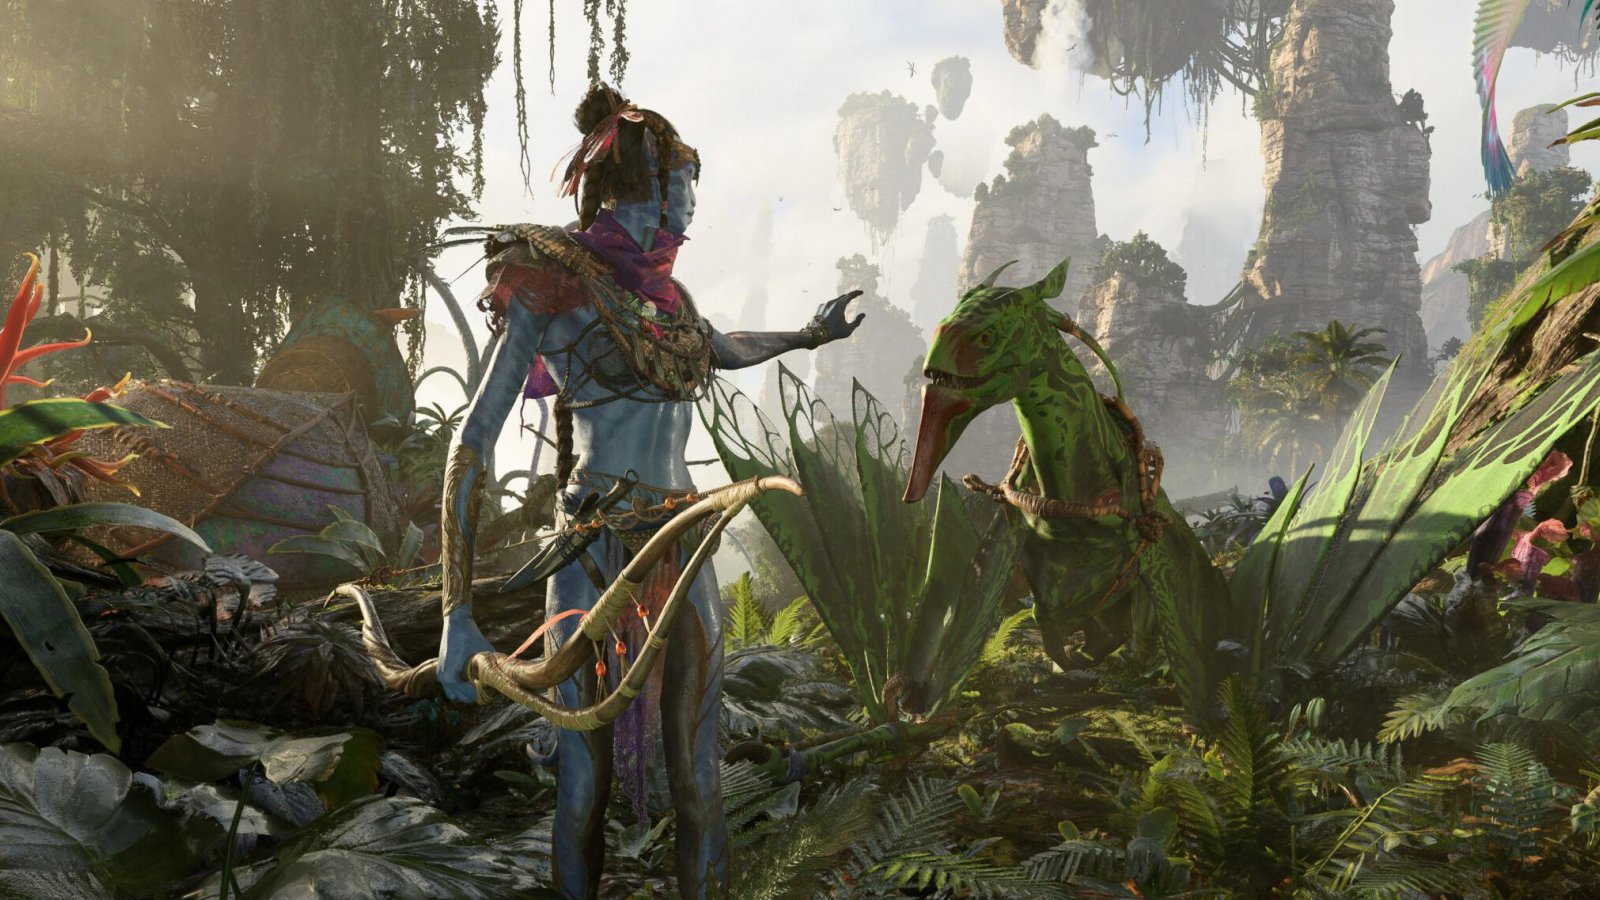 Avatar Frontiers of Pandora: due nuove immagini svelate da un leaker, un video arriverà presto